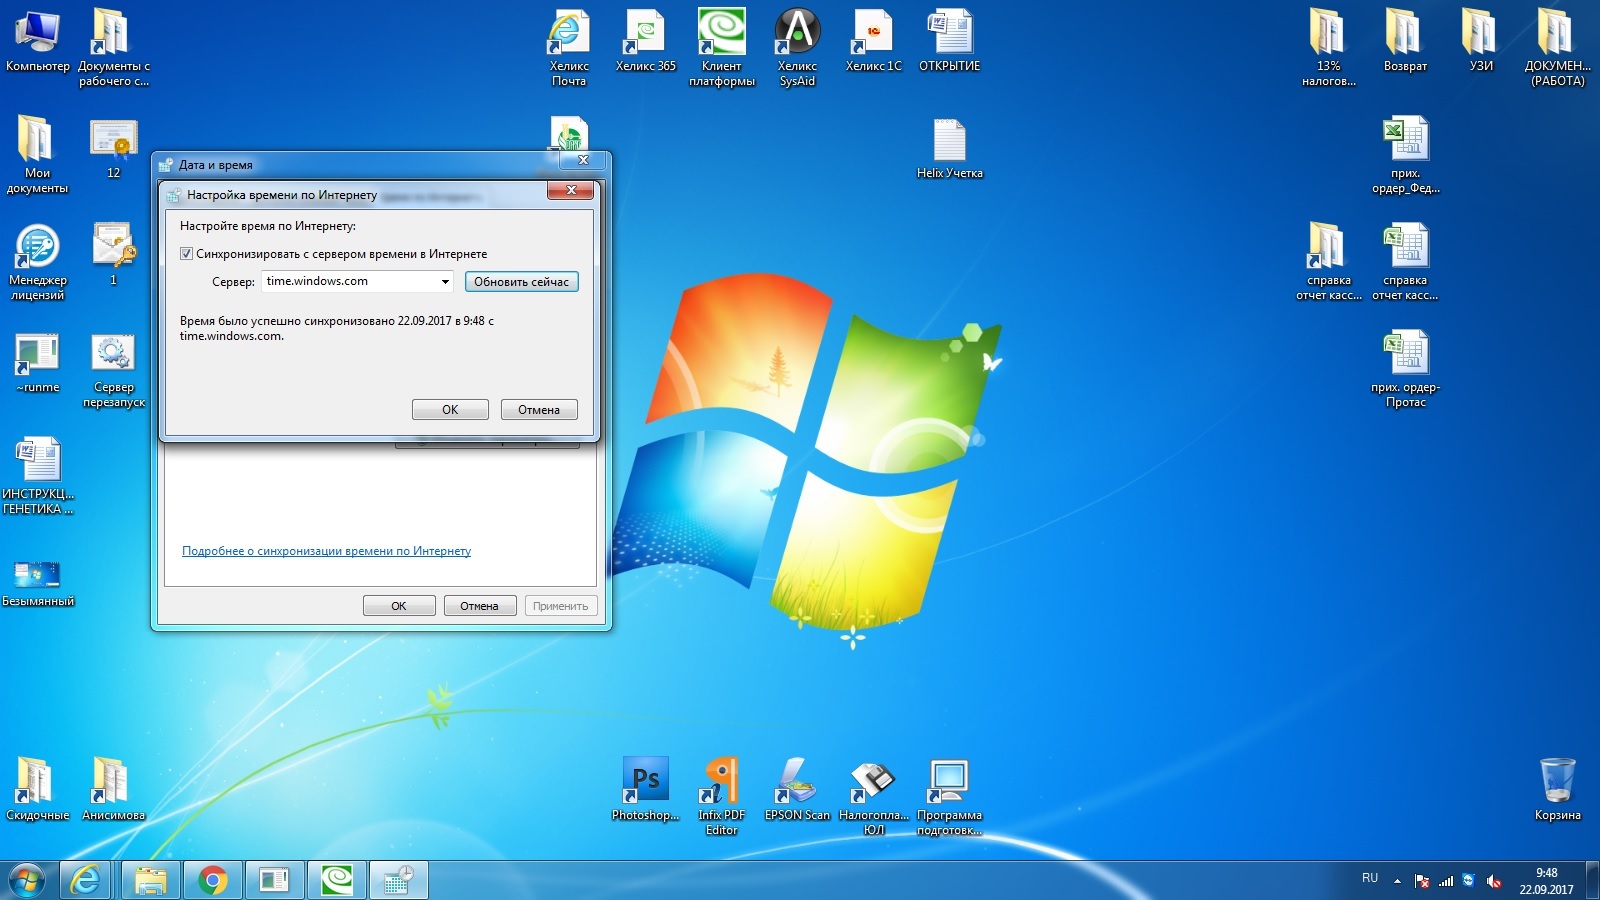 Windows mr. Скрин экрана виндовс 7. Снимок экрана в Windows 7. Скриншот экрана Windows 7. Скриншот экрана виндовс 7 клавиши.